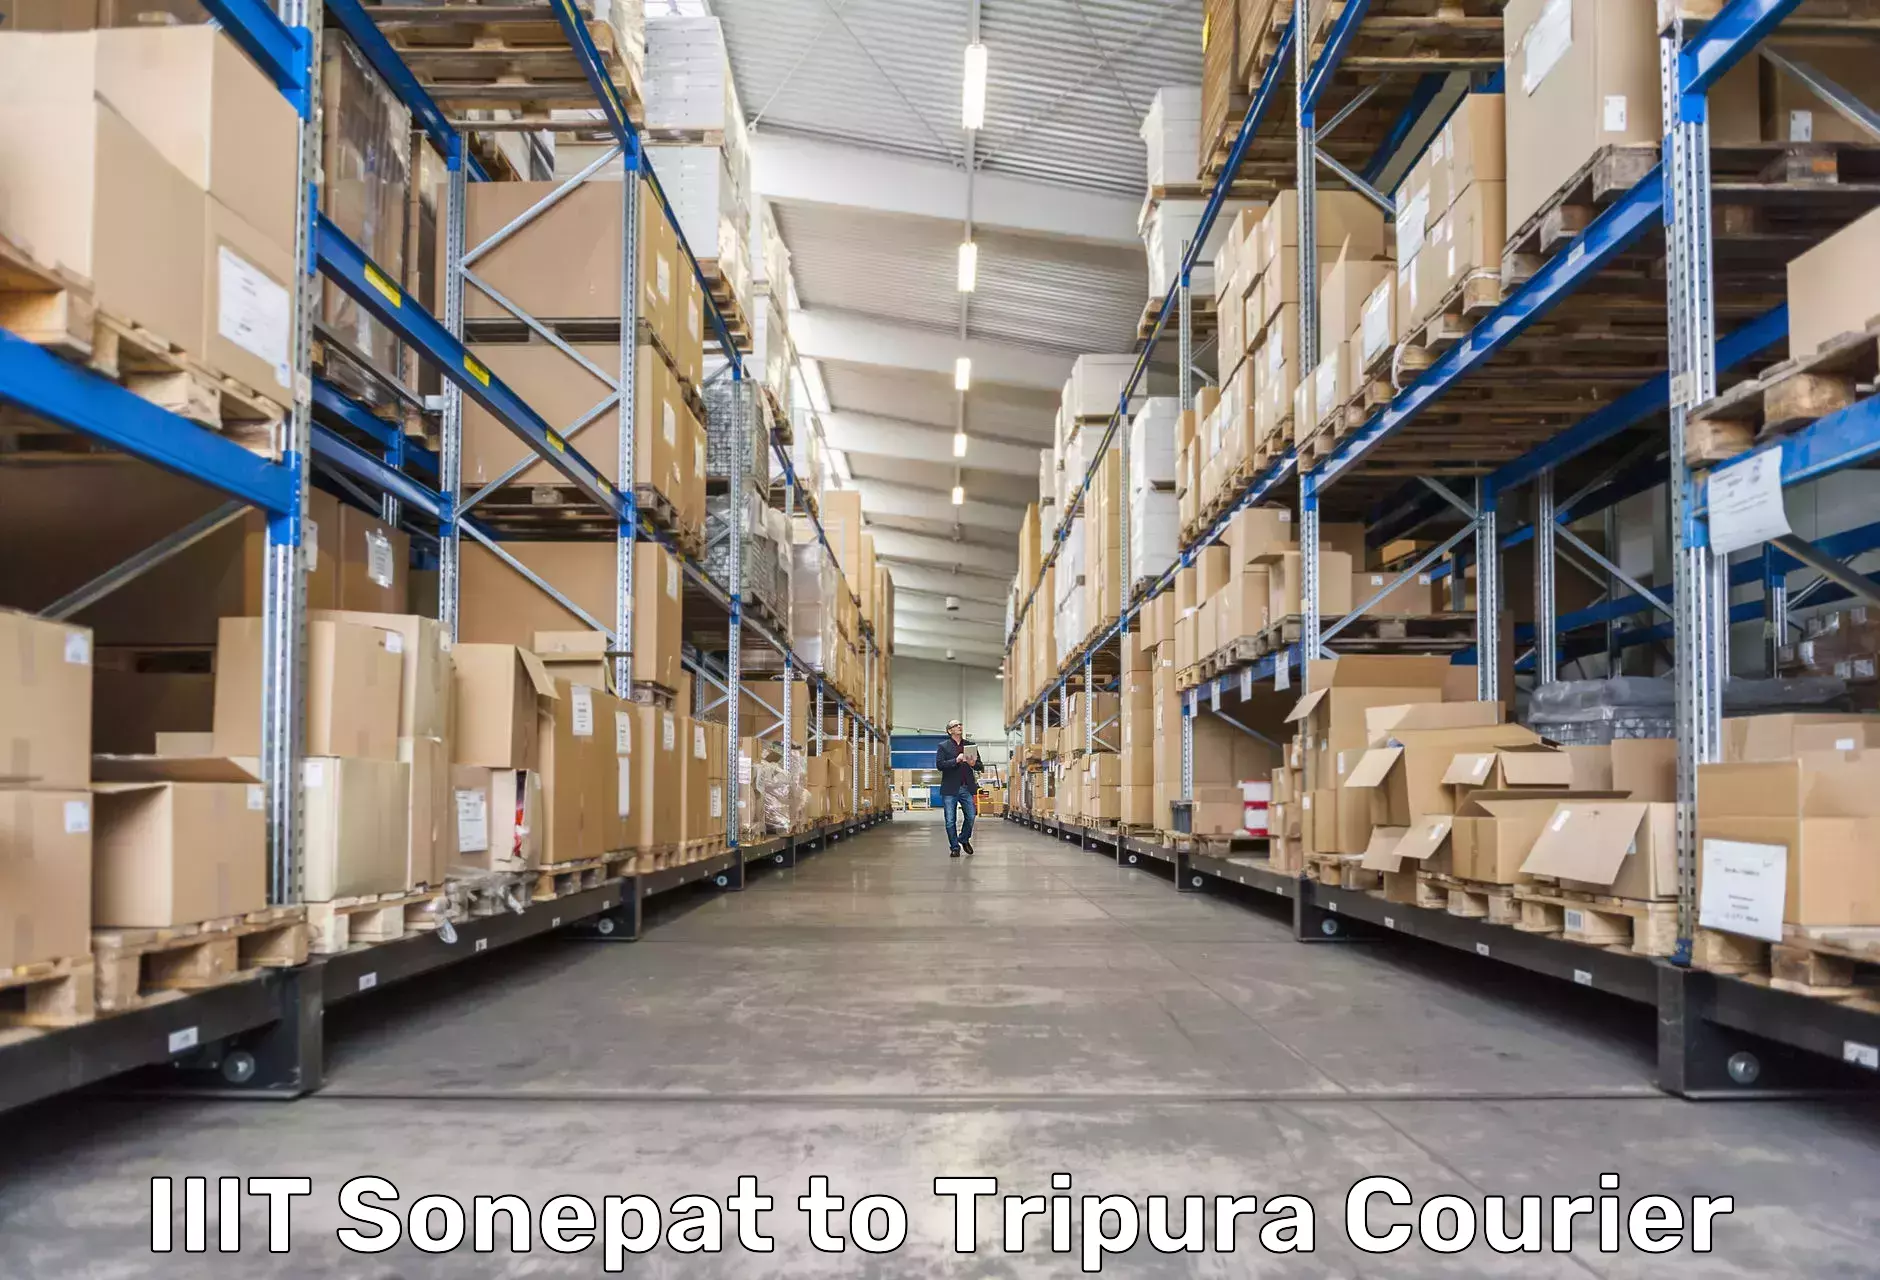 Premium courier solutions in IIIT Sonepat to Ambassa